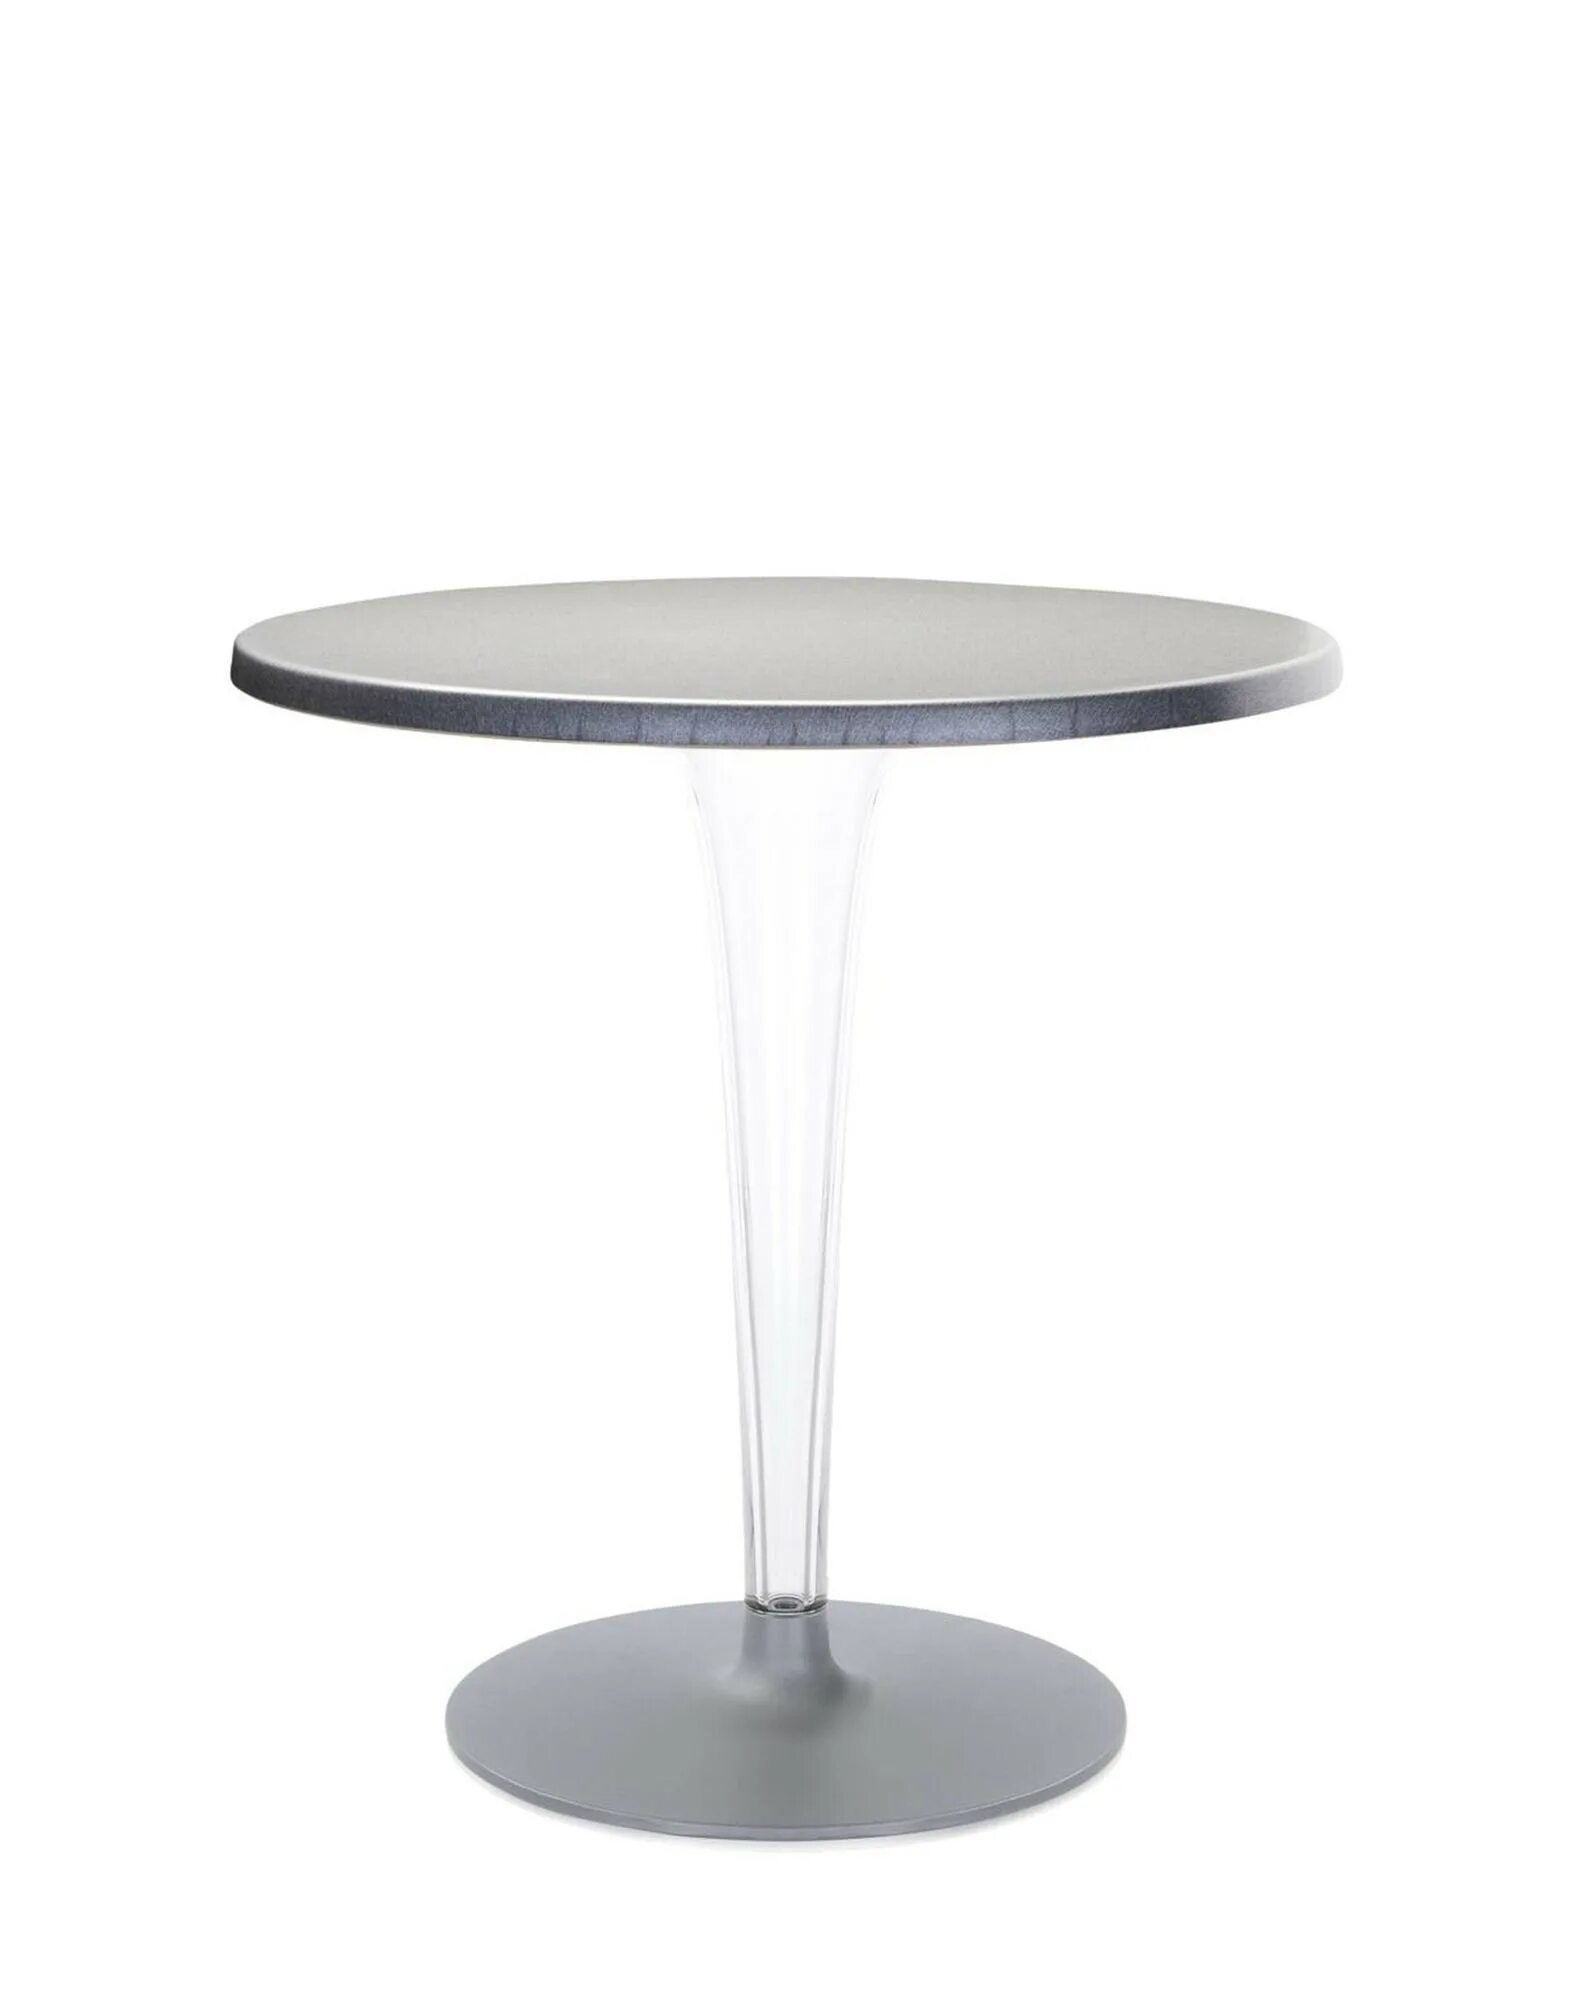 Стол высотой 70 см. Кофейный стол Стерлинг Silver с круглой столешницей артикул: IMR-877649. Столик круглый серый. Кофейный столик серый. Стол с прозрачными ножками.